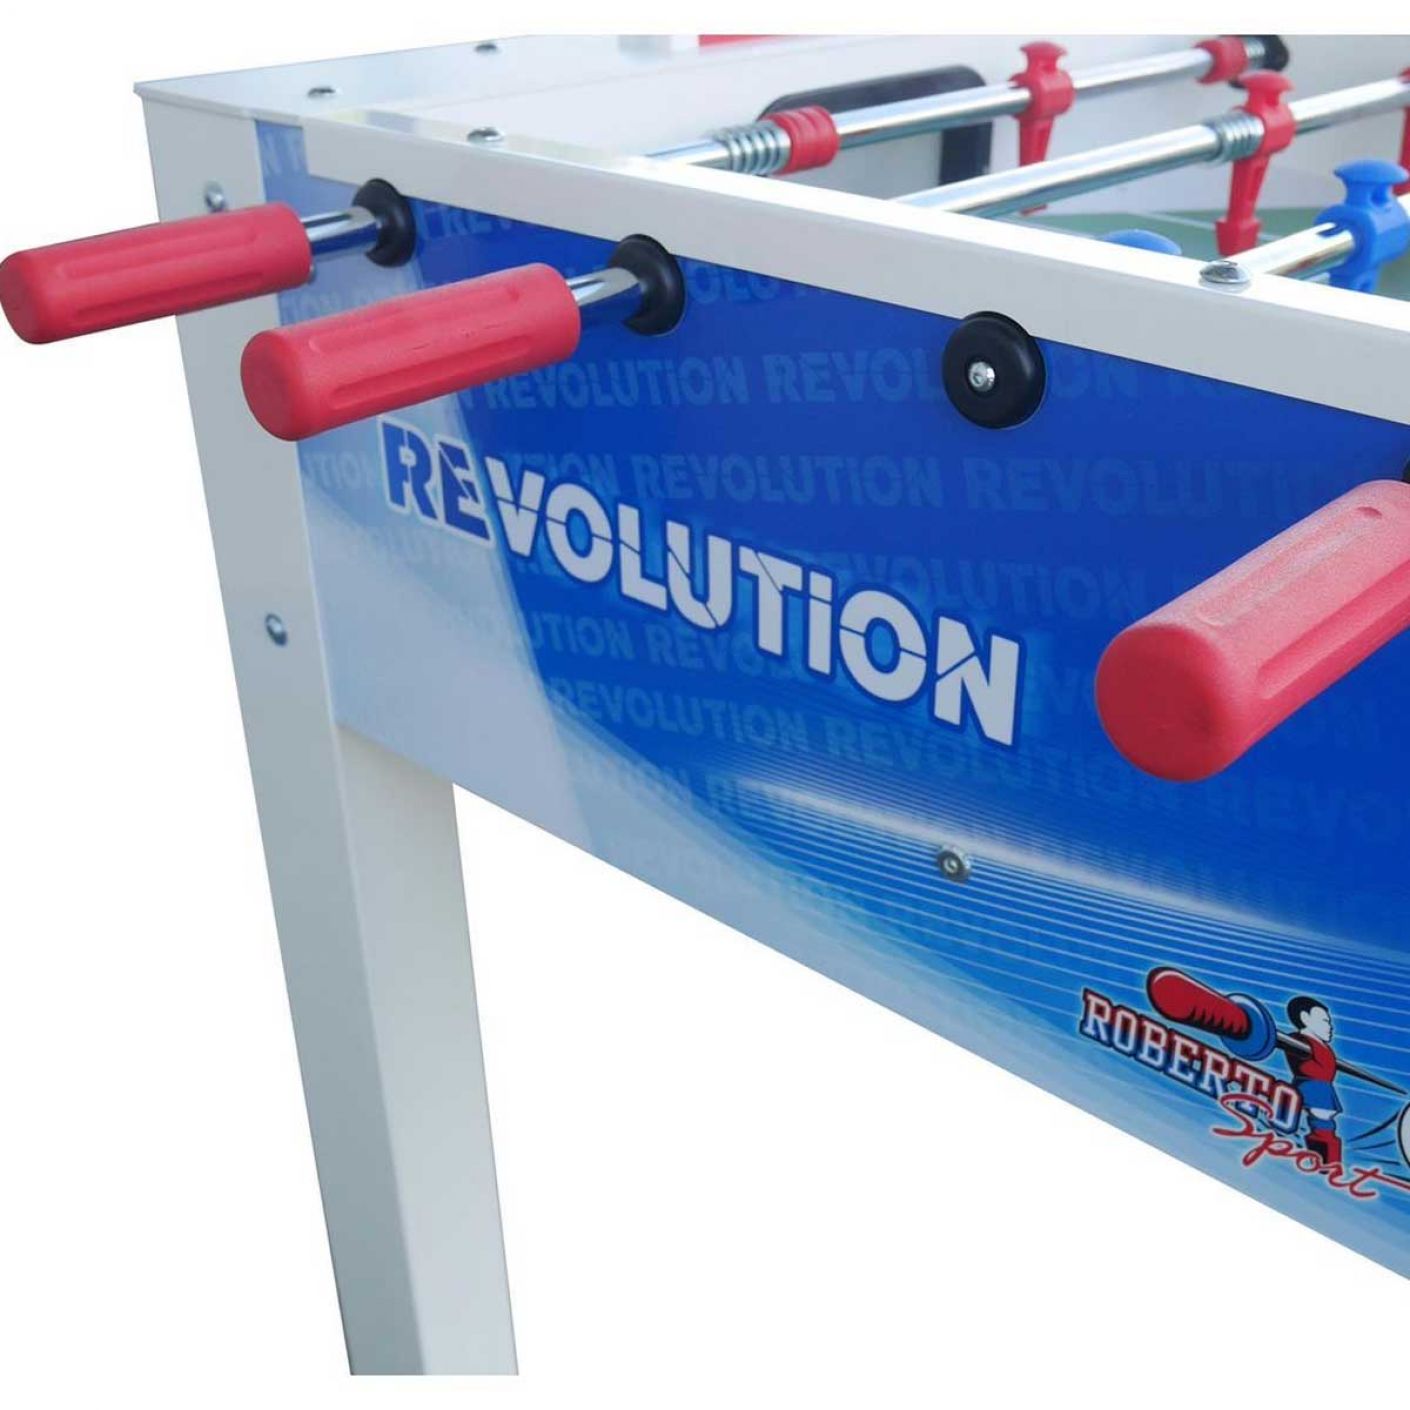 Roberto Sport Sport Revolution football table